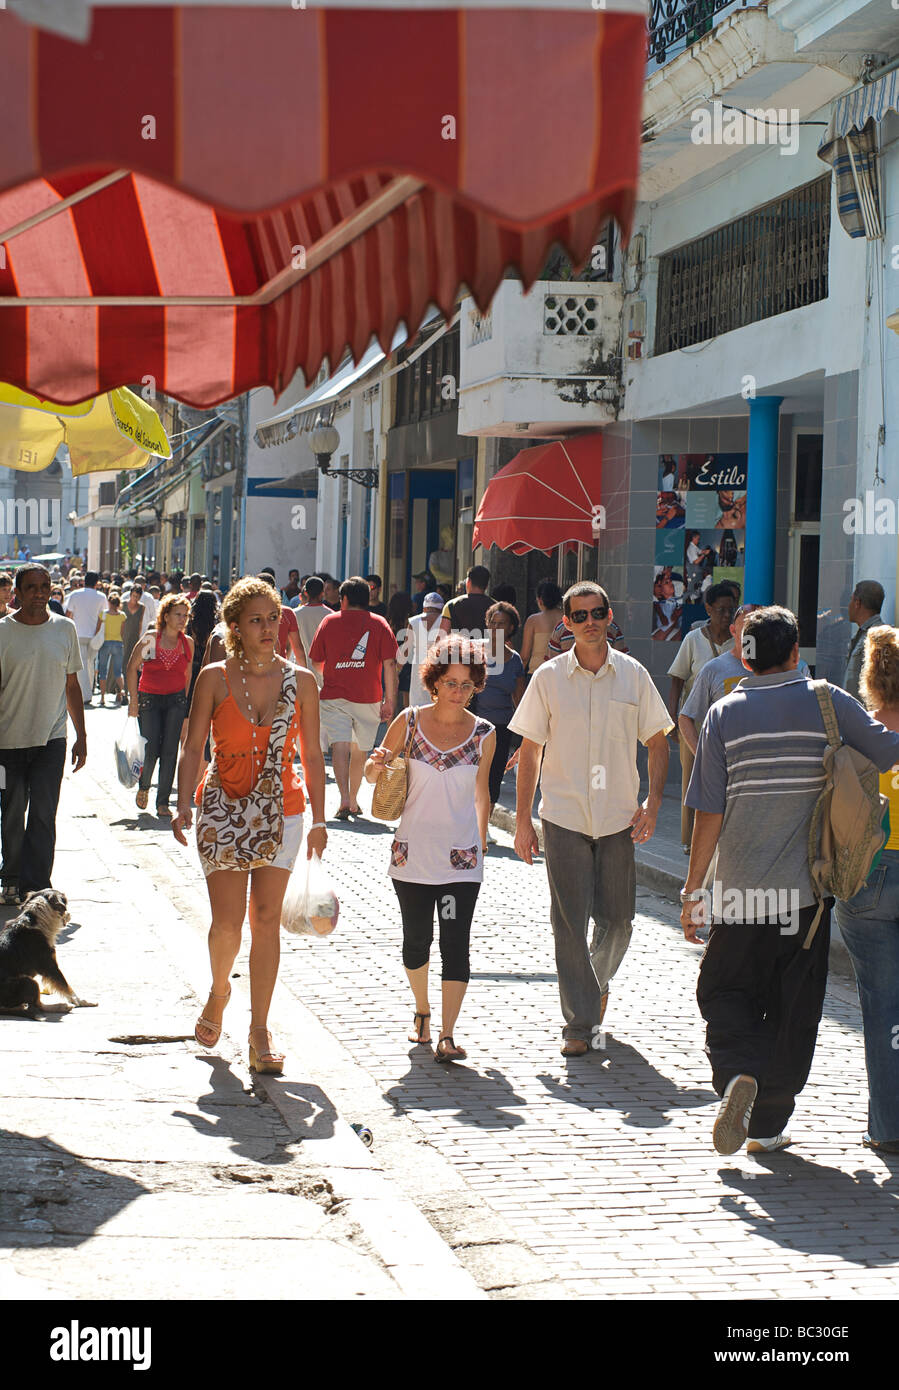 Busy street scene of shoppers on Calle Obispo. Popular street in Old Havana, Cuba Stock Photo